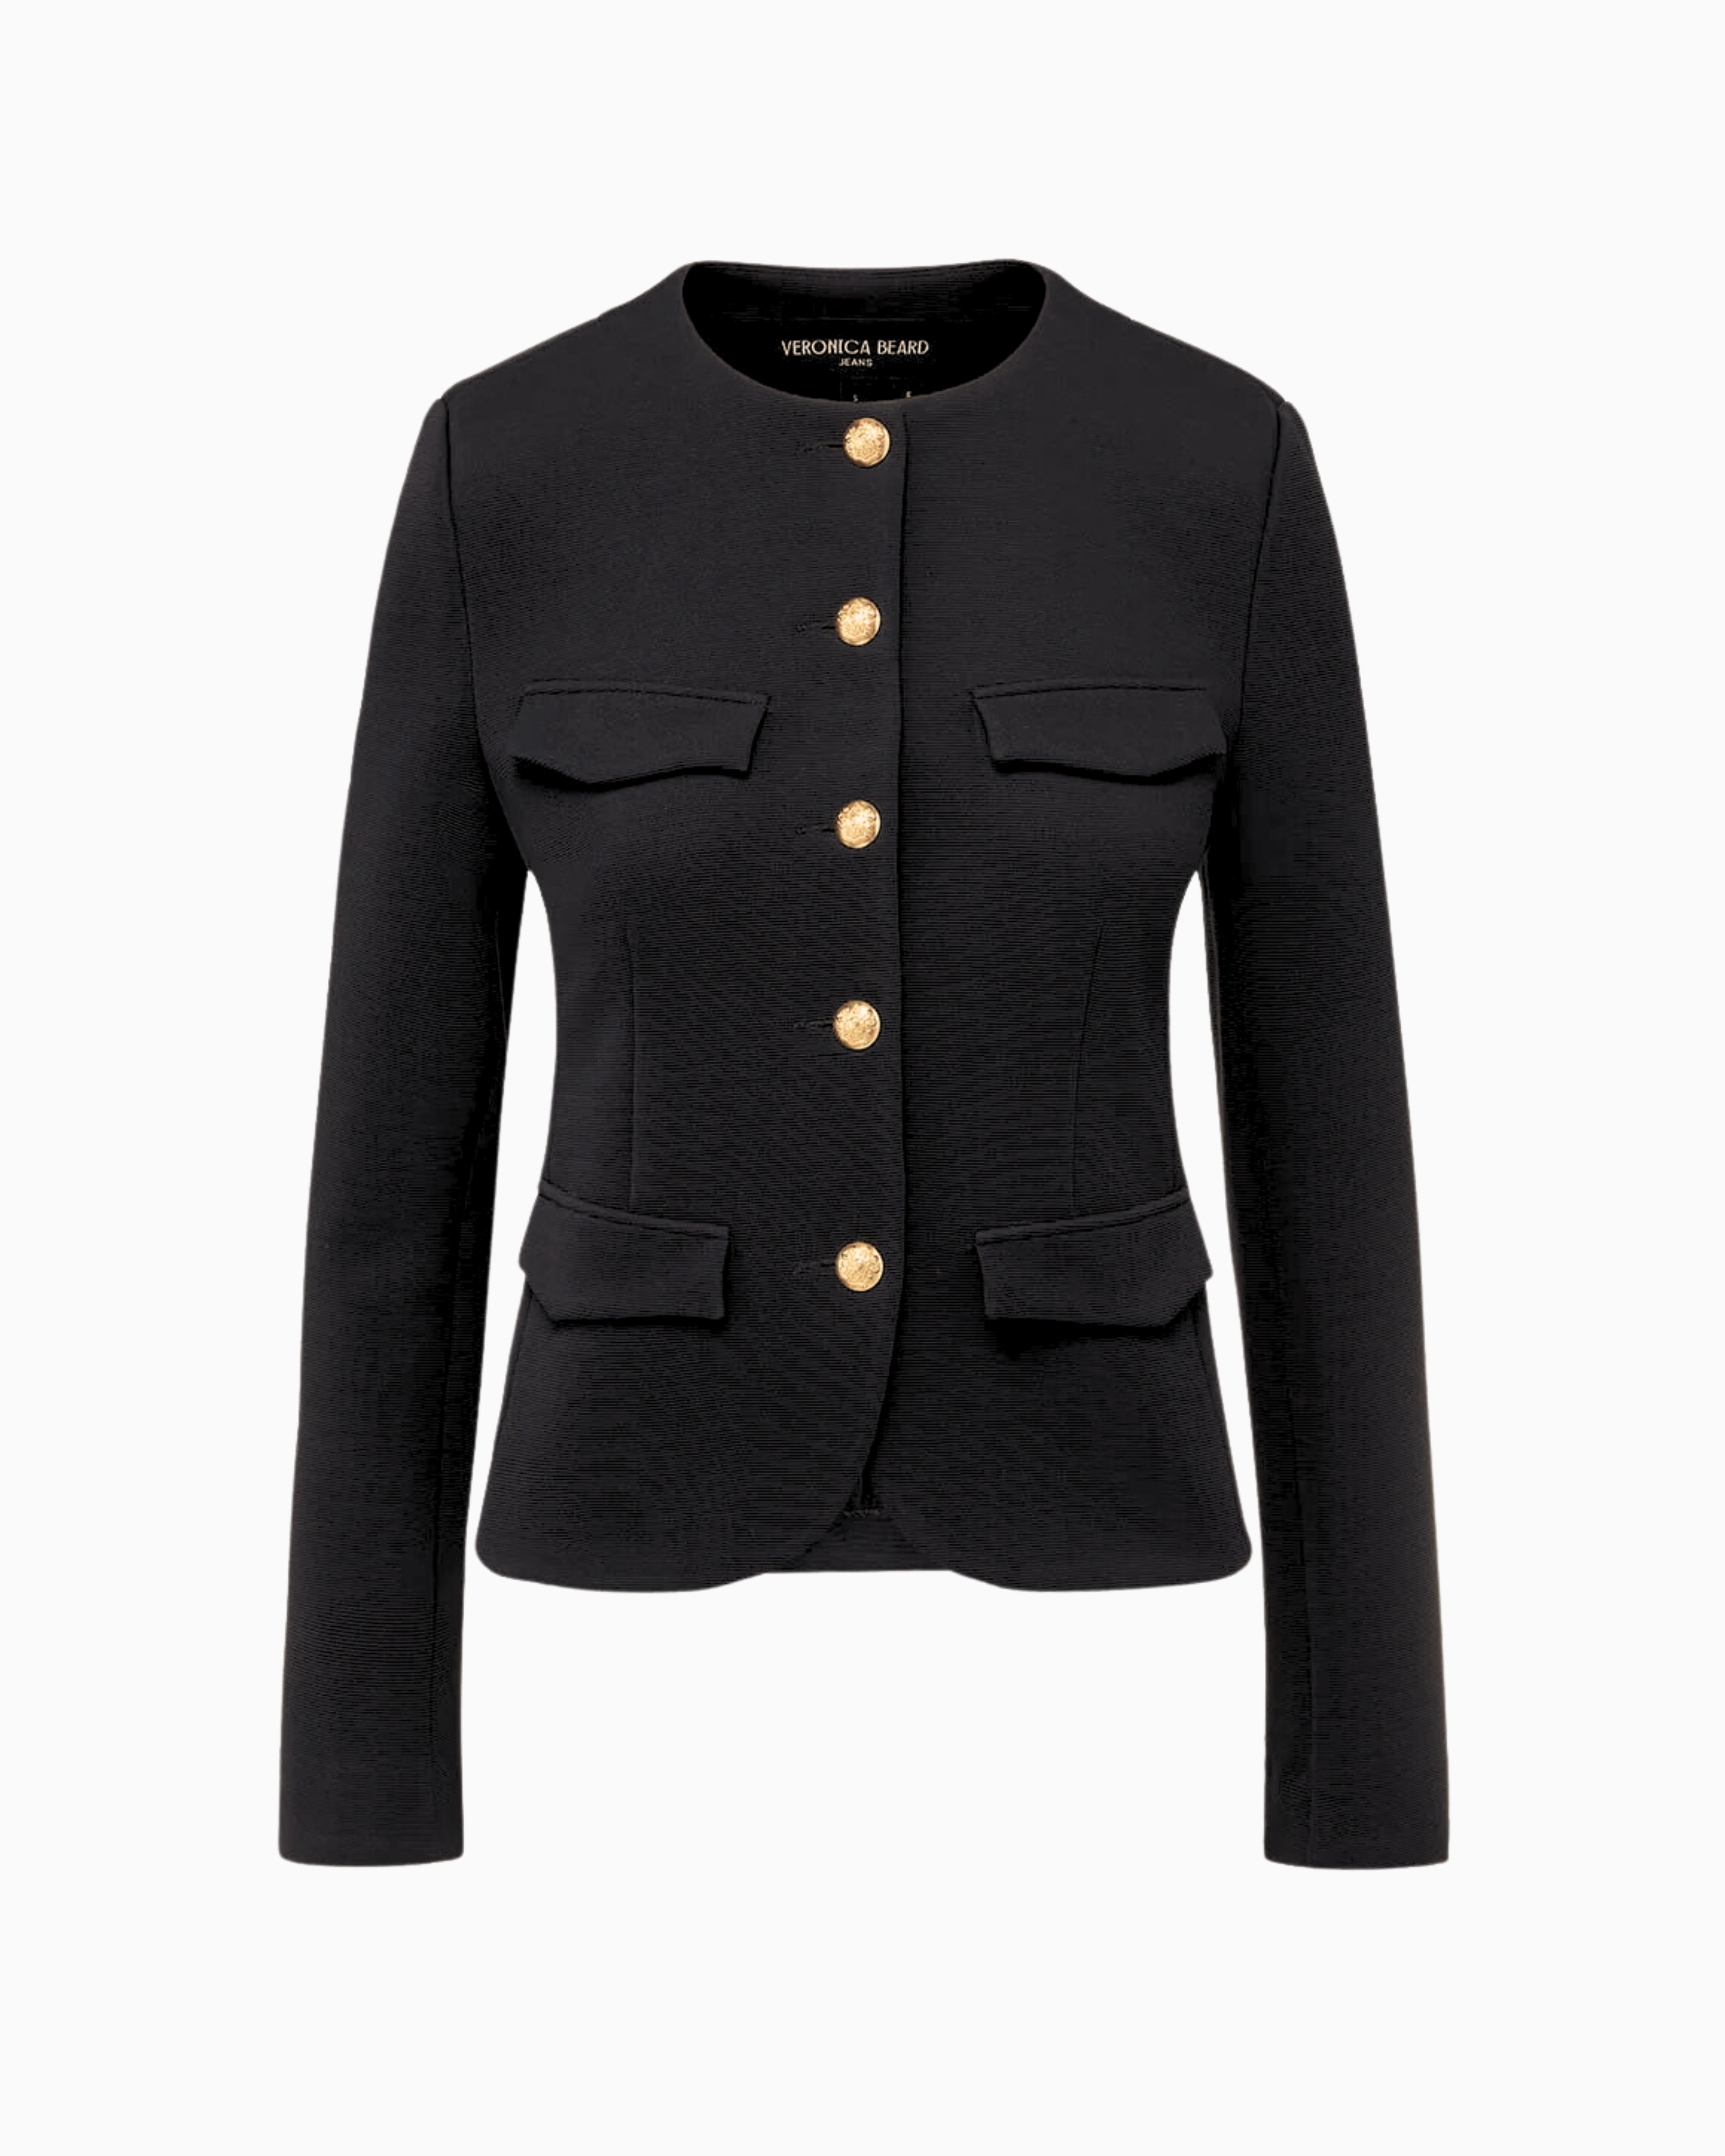 Veronica Beard Kensington Knit Jacket in Black